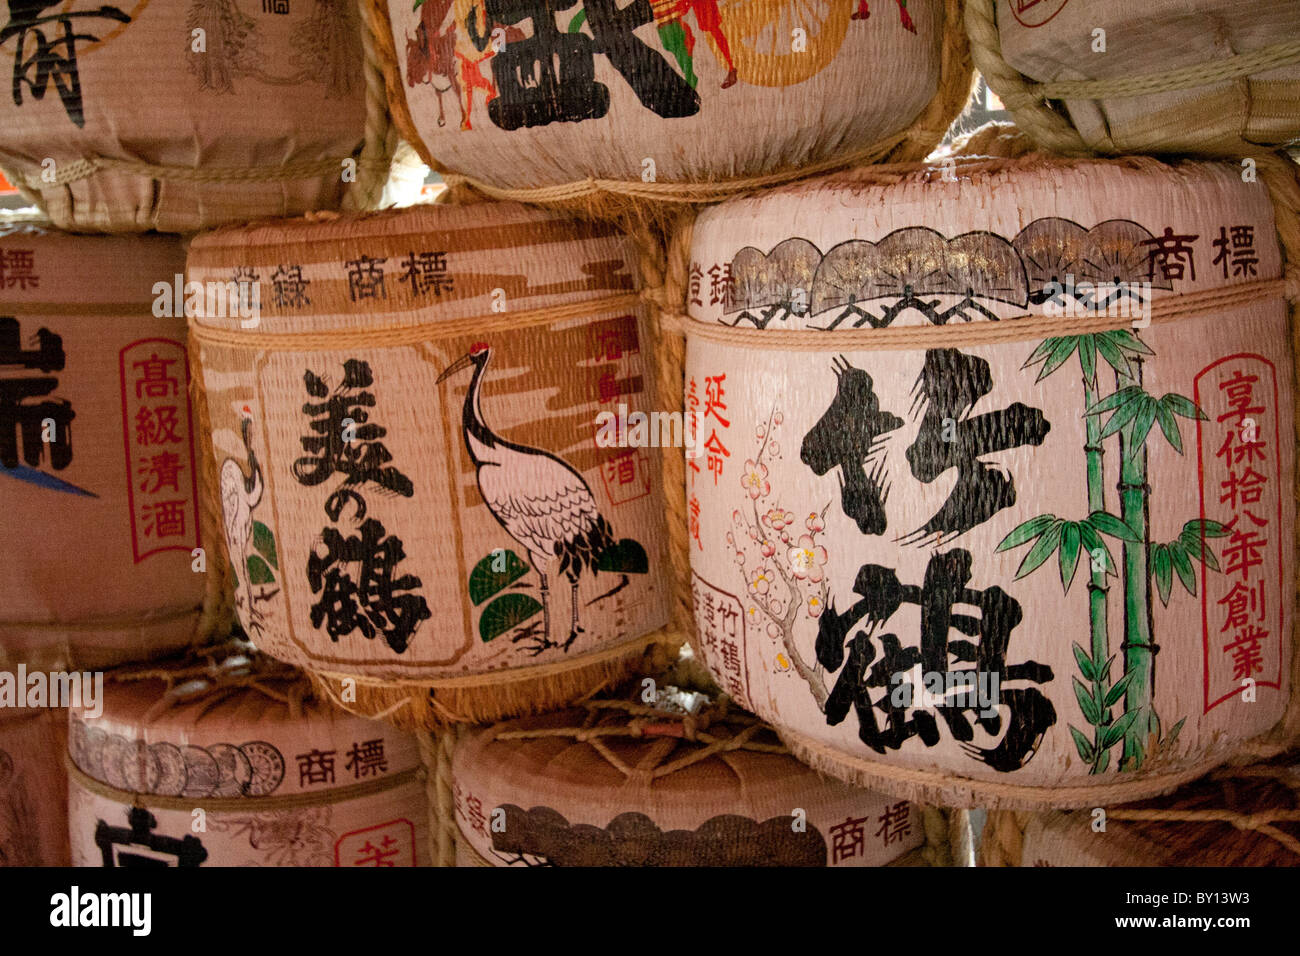 Sake barrels Stock Photo